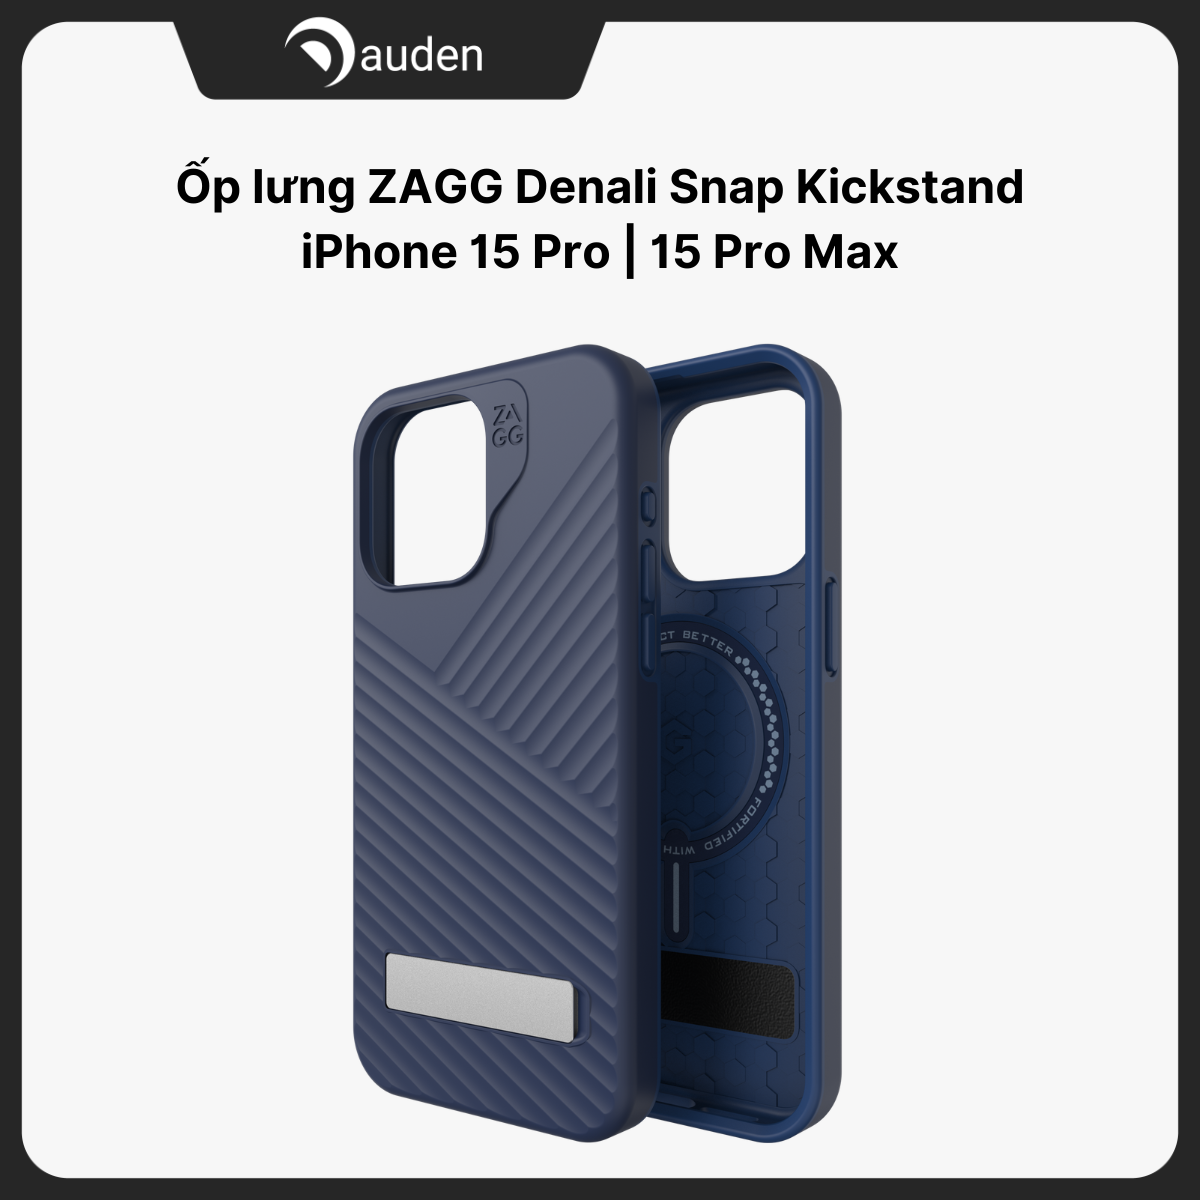 Ốp lưng iPhone 15 Pro iPhone 15 Pro Max ZAGG Denali Snap Kickstand hỗ trợ sạc MagSafe không dây - Hàng chính hãng bảo hành 12 tháng 1 đổi 1